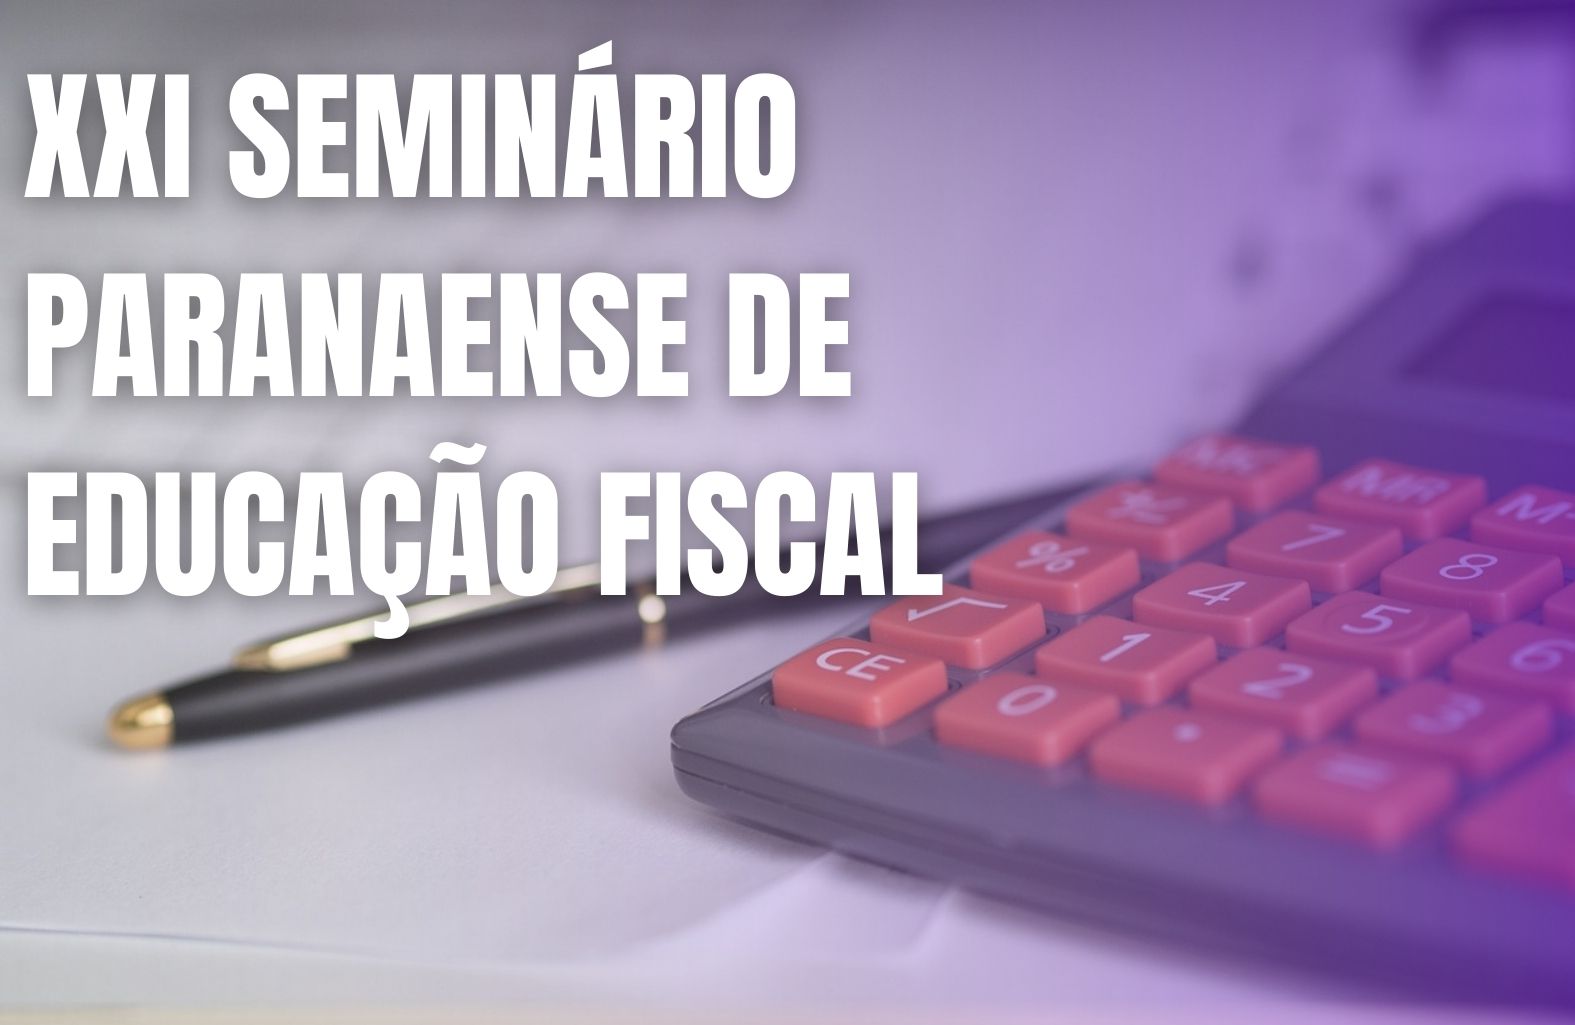 Veja aqui a transmissão completa do XXI Seminário Paranaense de Educação Fiscal